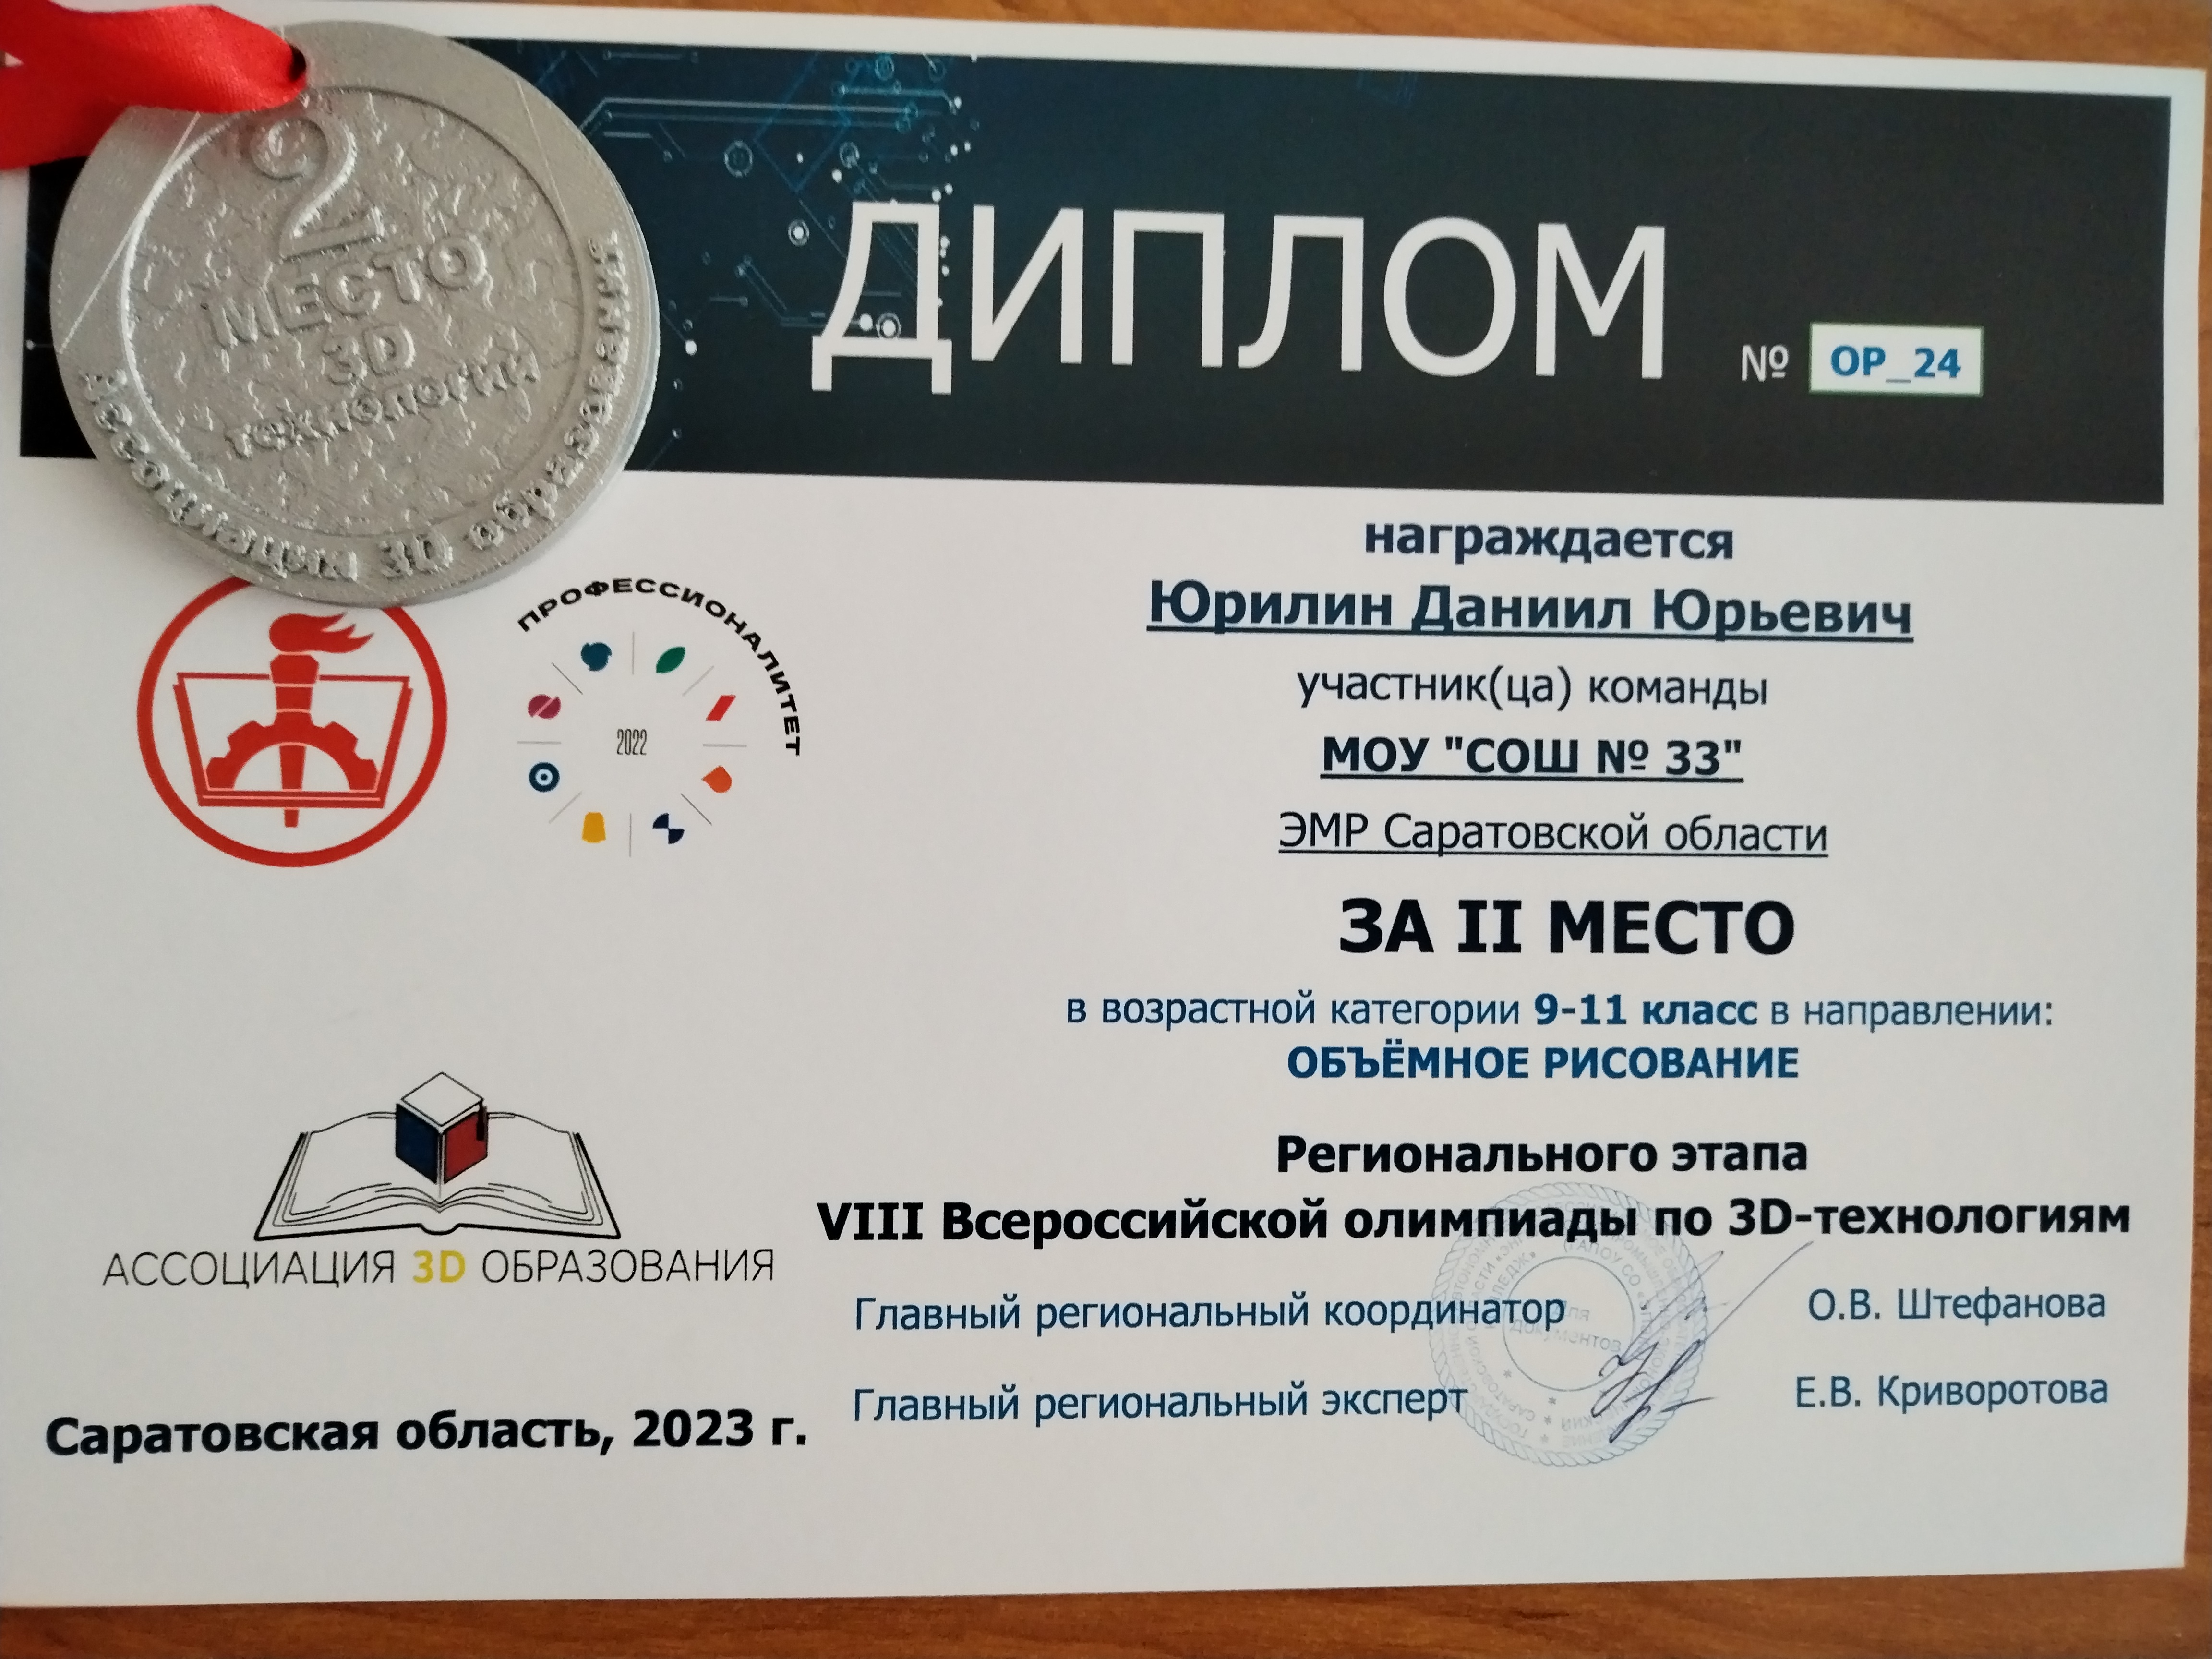 VIII Всероссийской олимпиады по 3D-технологиям» среди школьников 5-11 классов Саратовской области.